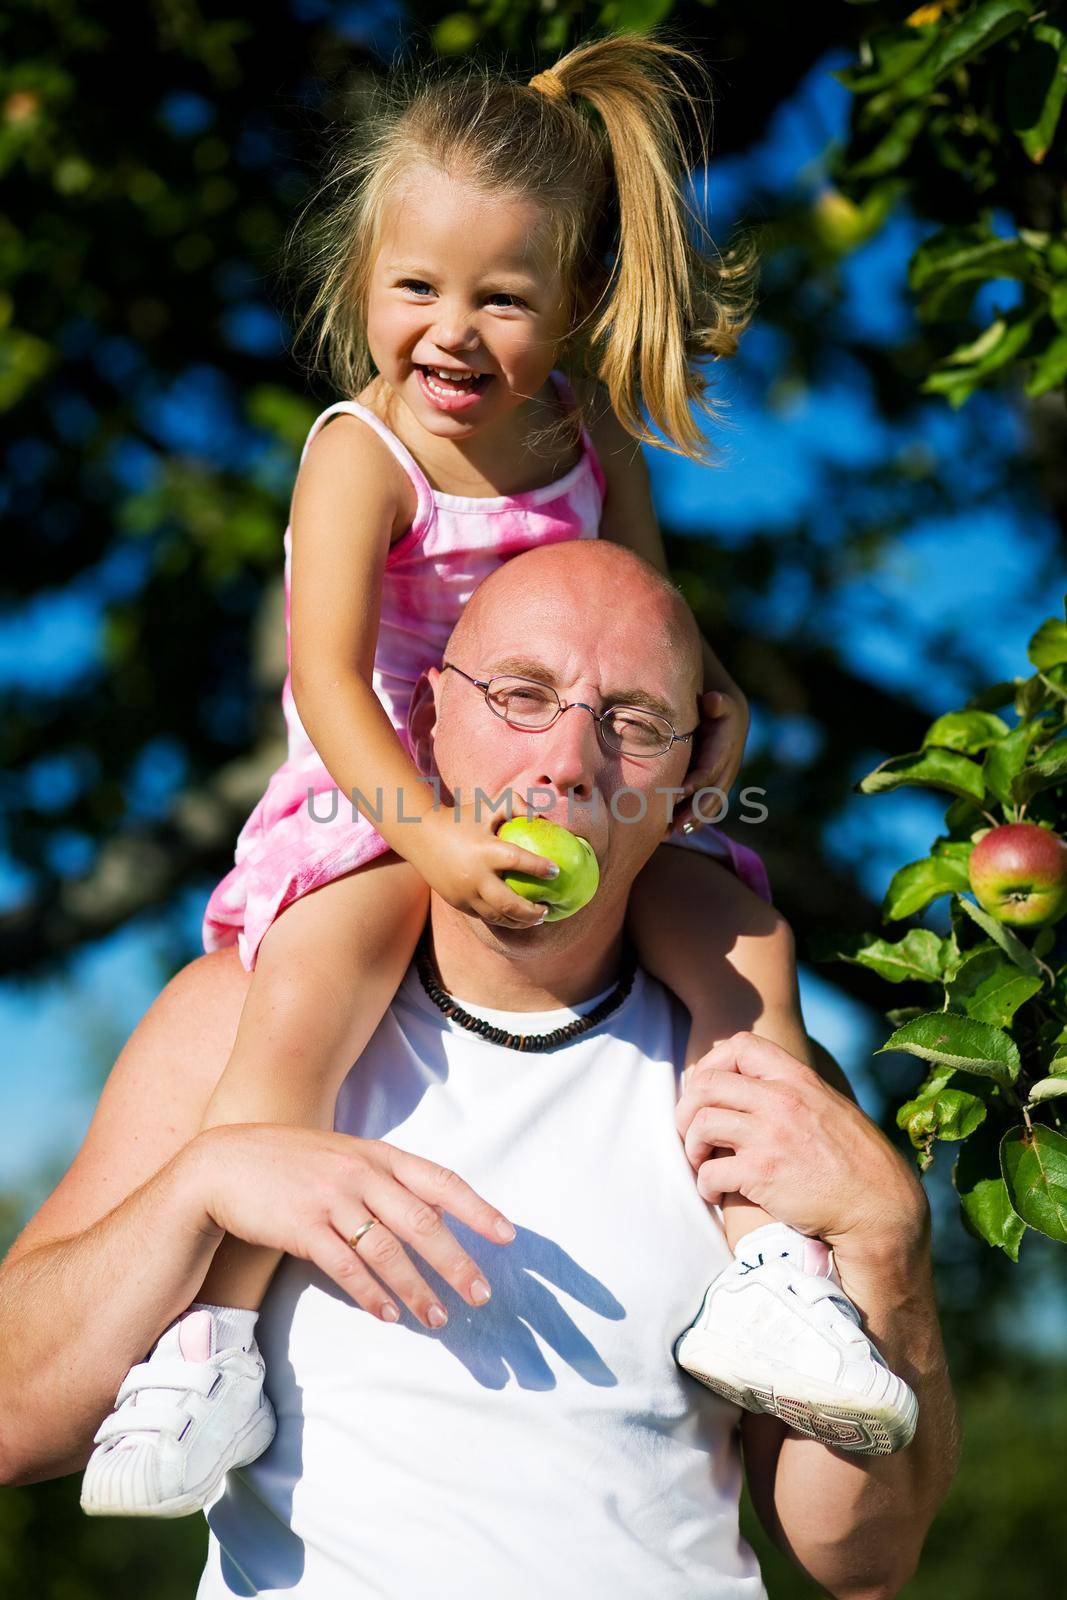 Feeding daddy with apple by Kzenon